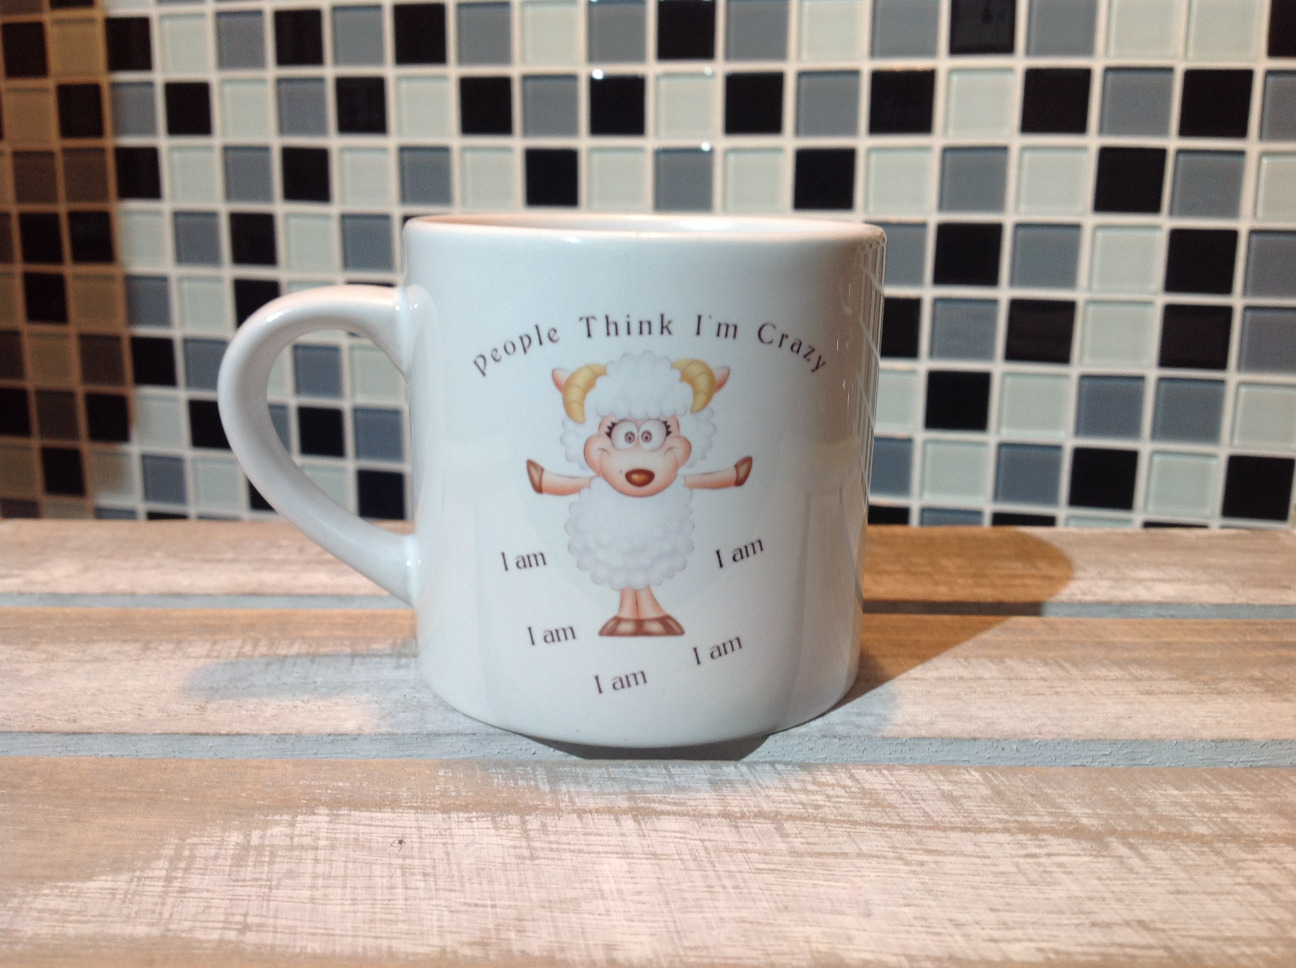 Sheep Espresso Mug - People Think I'm Crazy .. I am - Click Image to Close